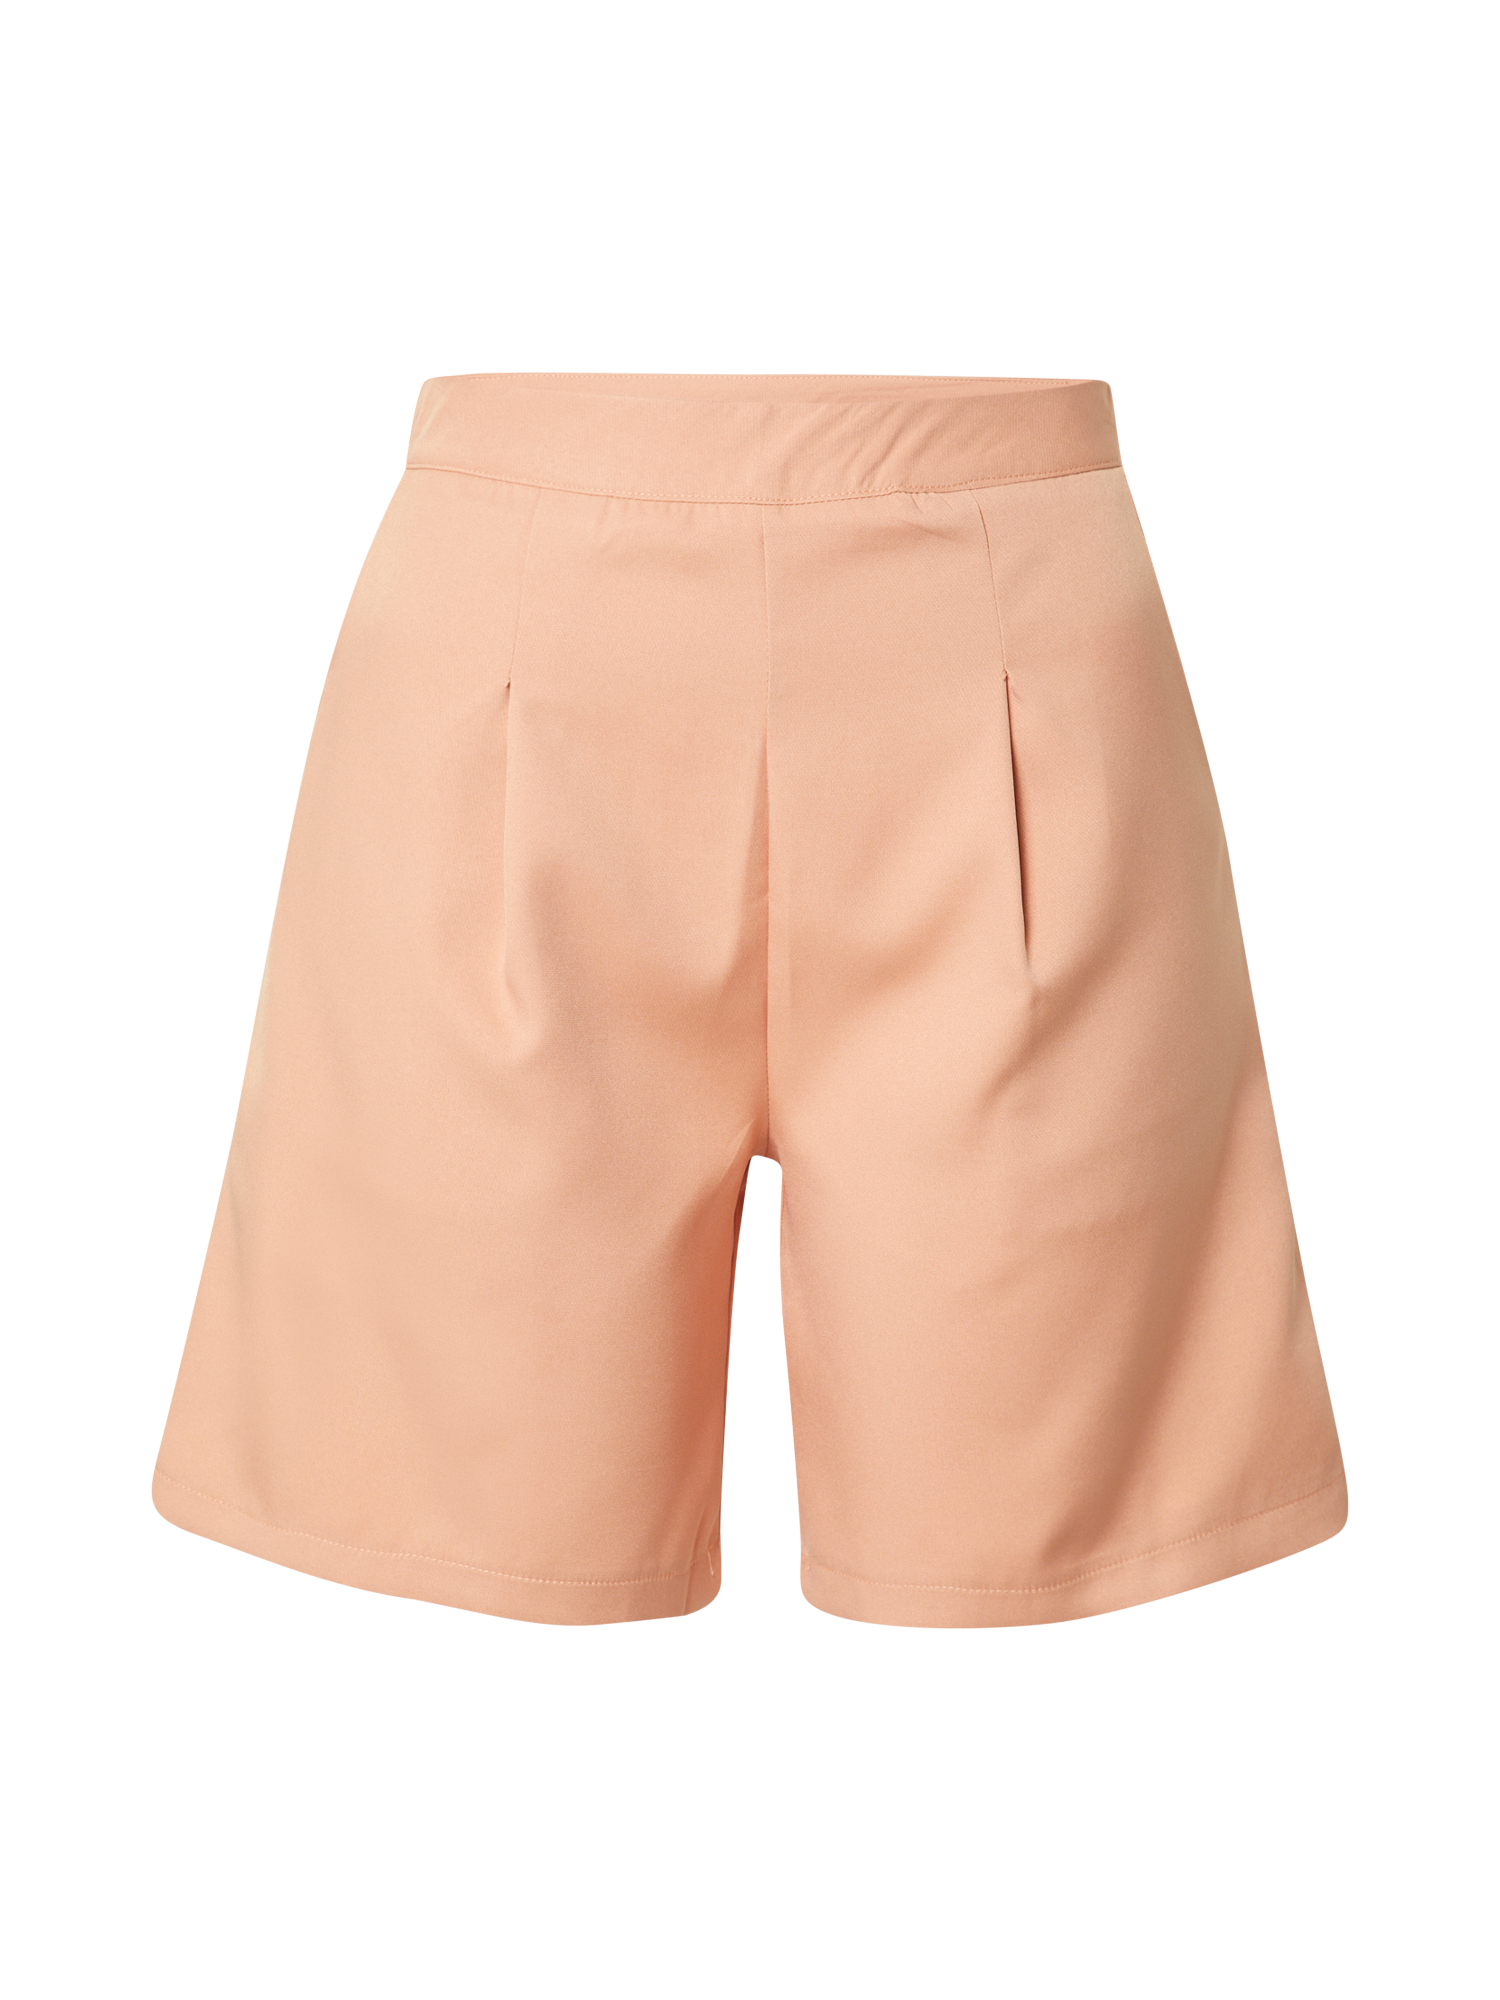 Odzież Kobiety In The Style Shorts w kolorze Brzoskwiniowym 